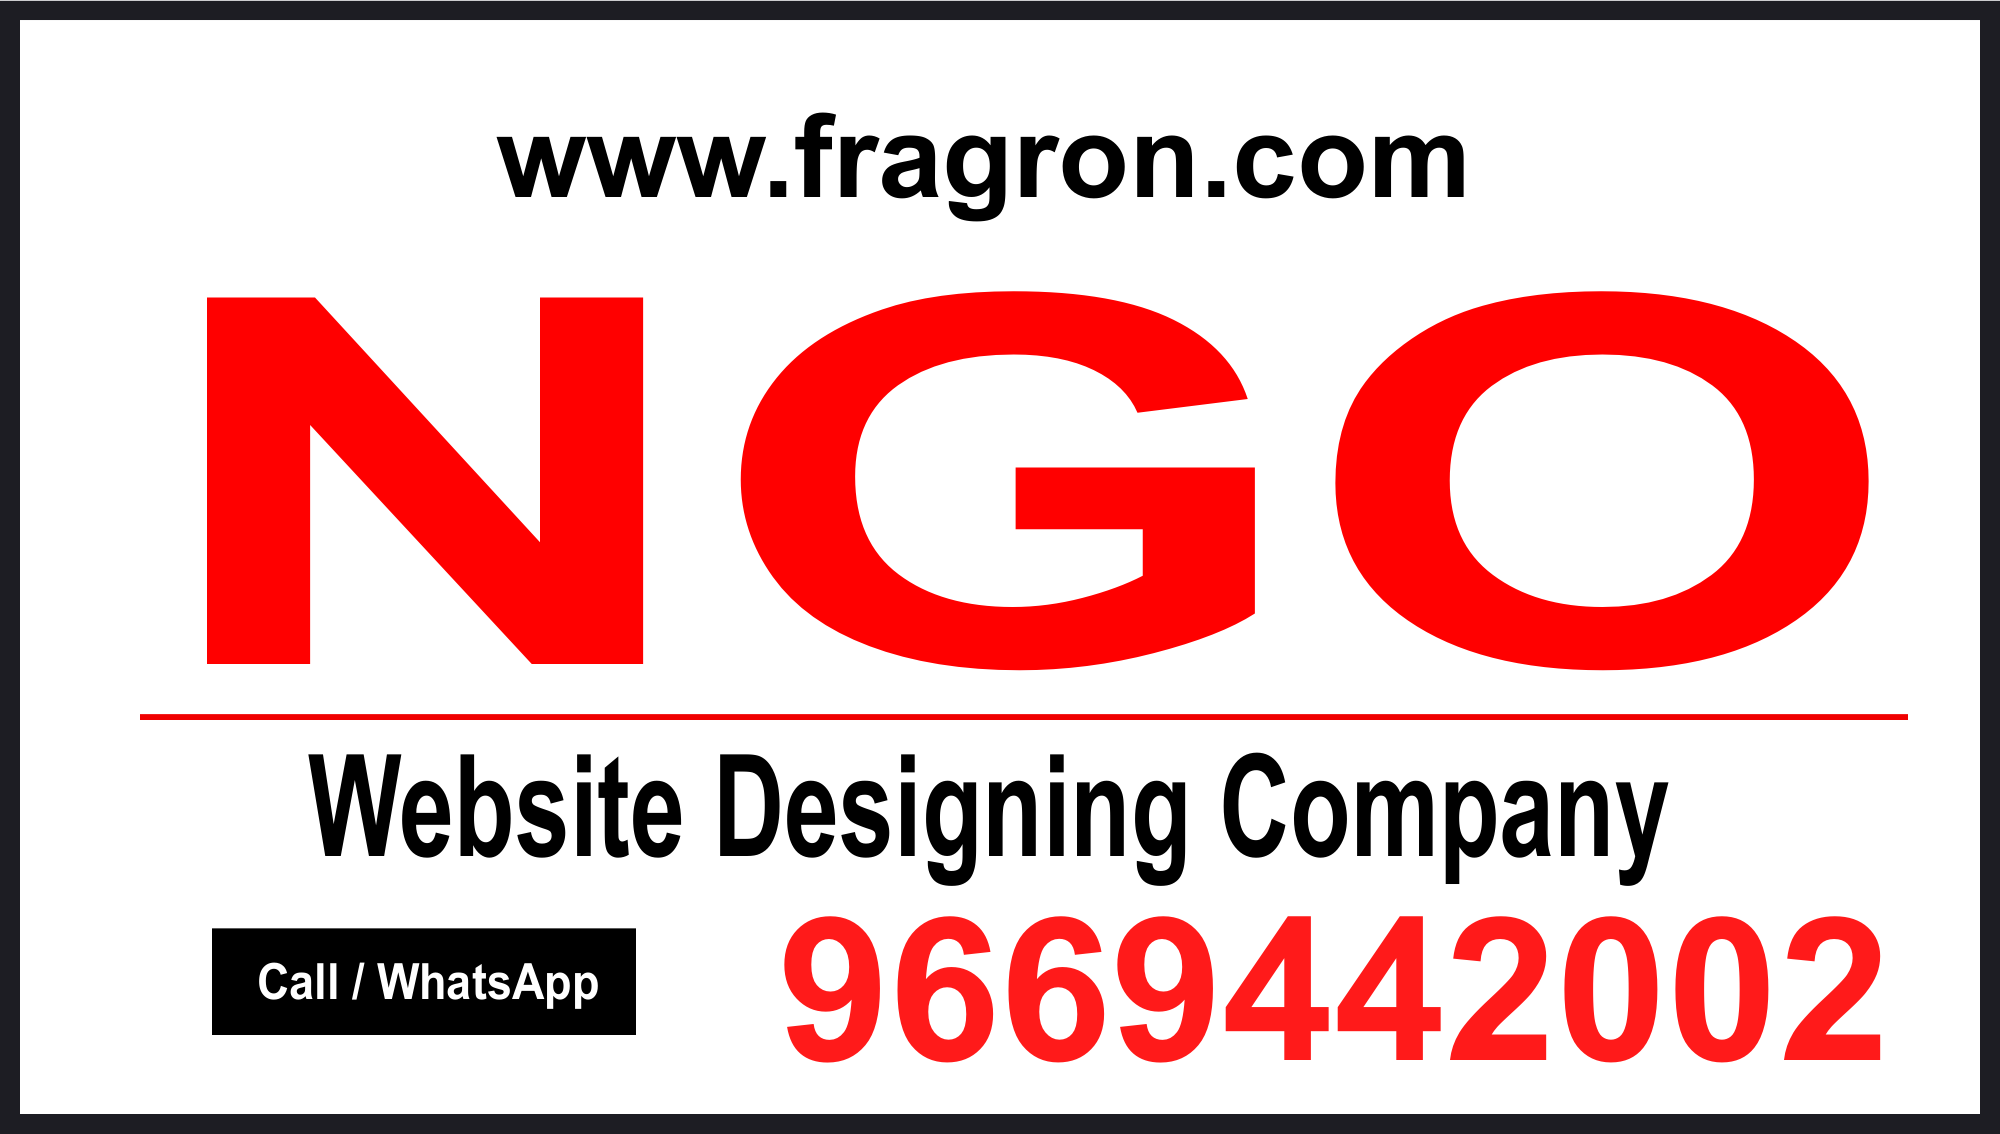 NGO Website Designing Company